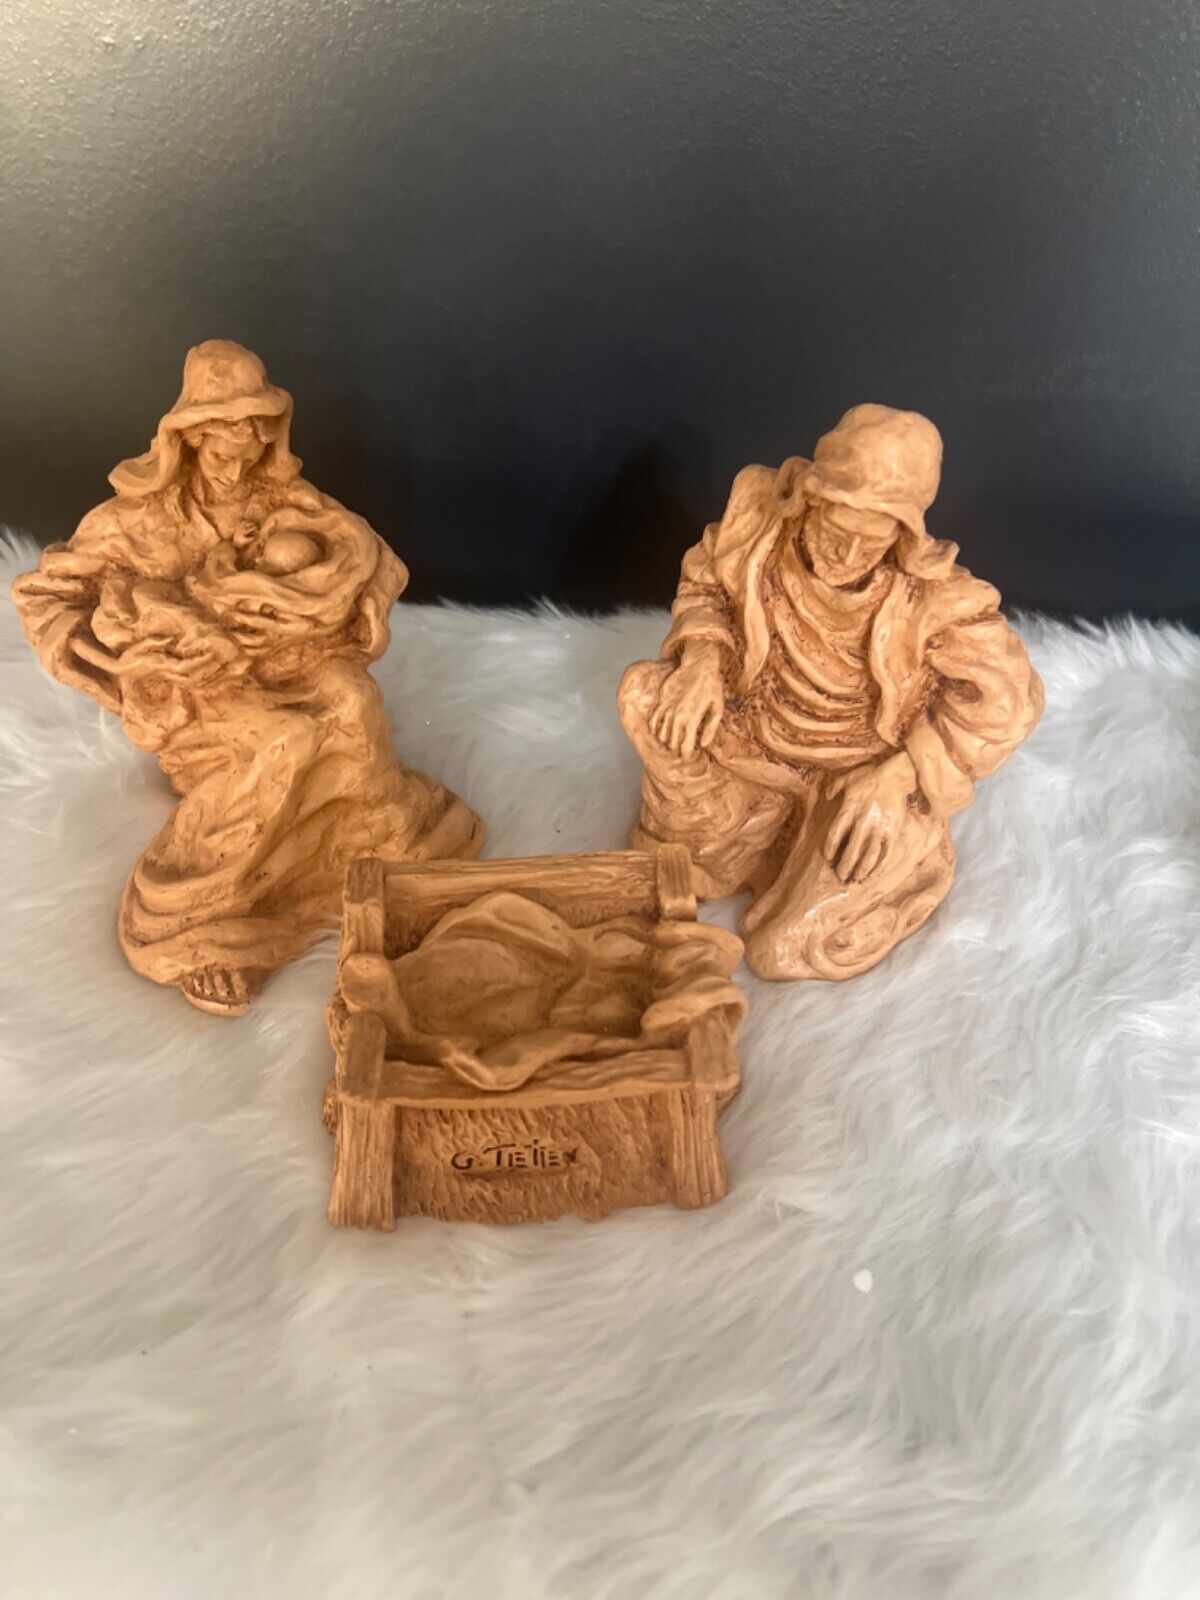 3 Piece Resin Nativity Set Mary Joseph Jesus Christmas G. Tietien